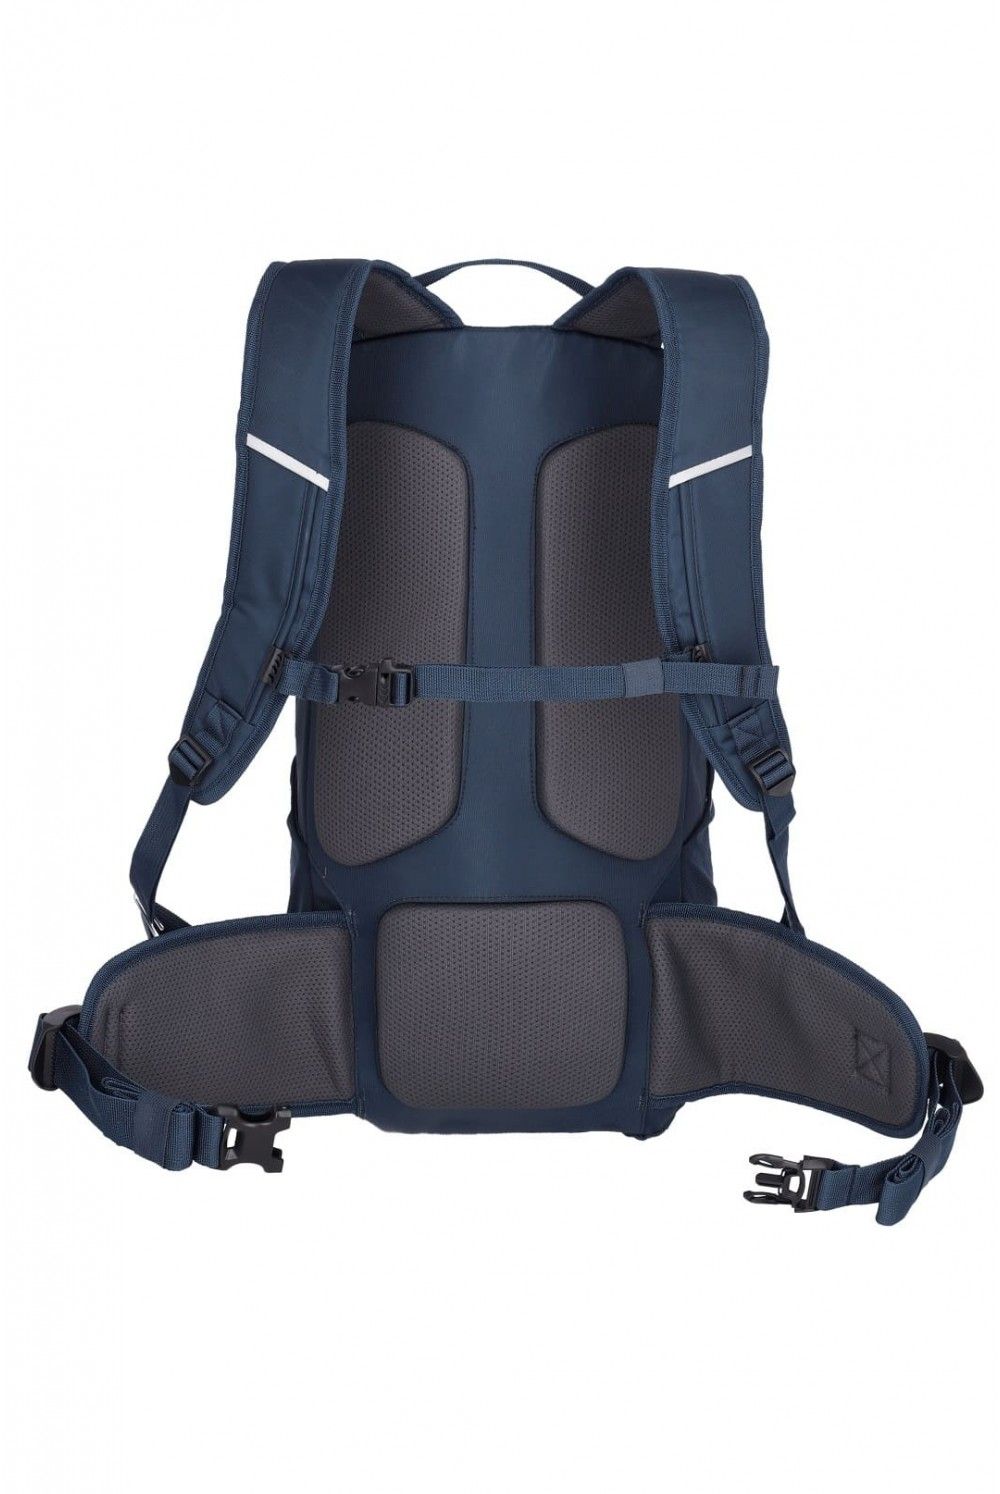 Hiking backpack Travelite Offlite 20 liters